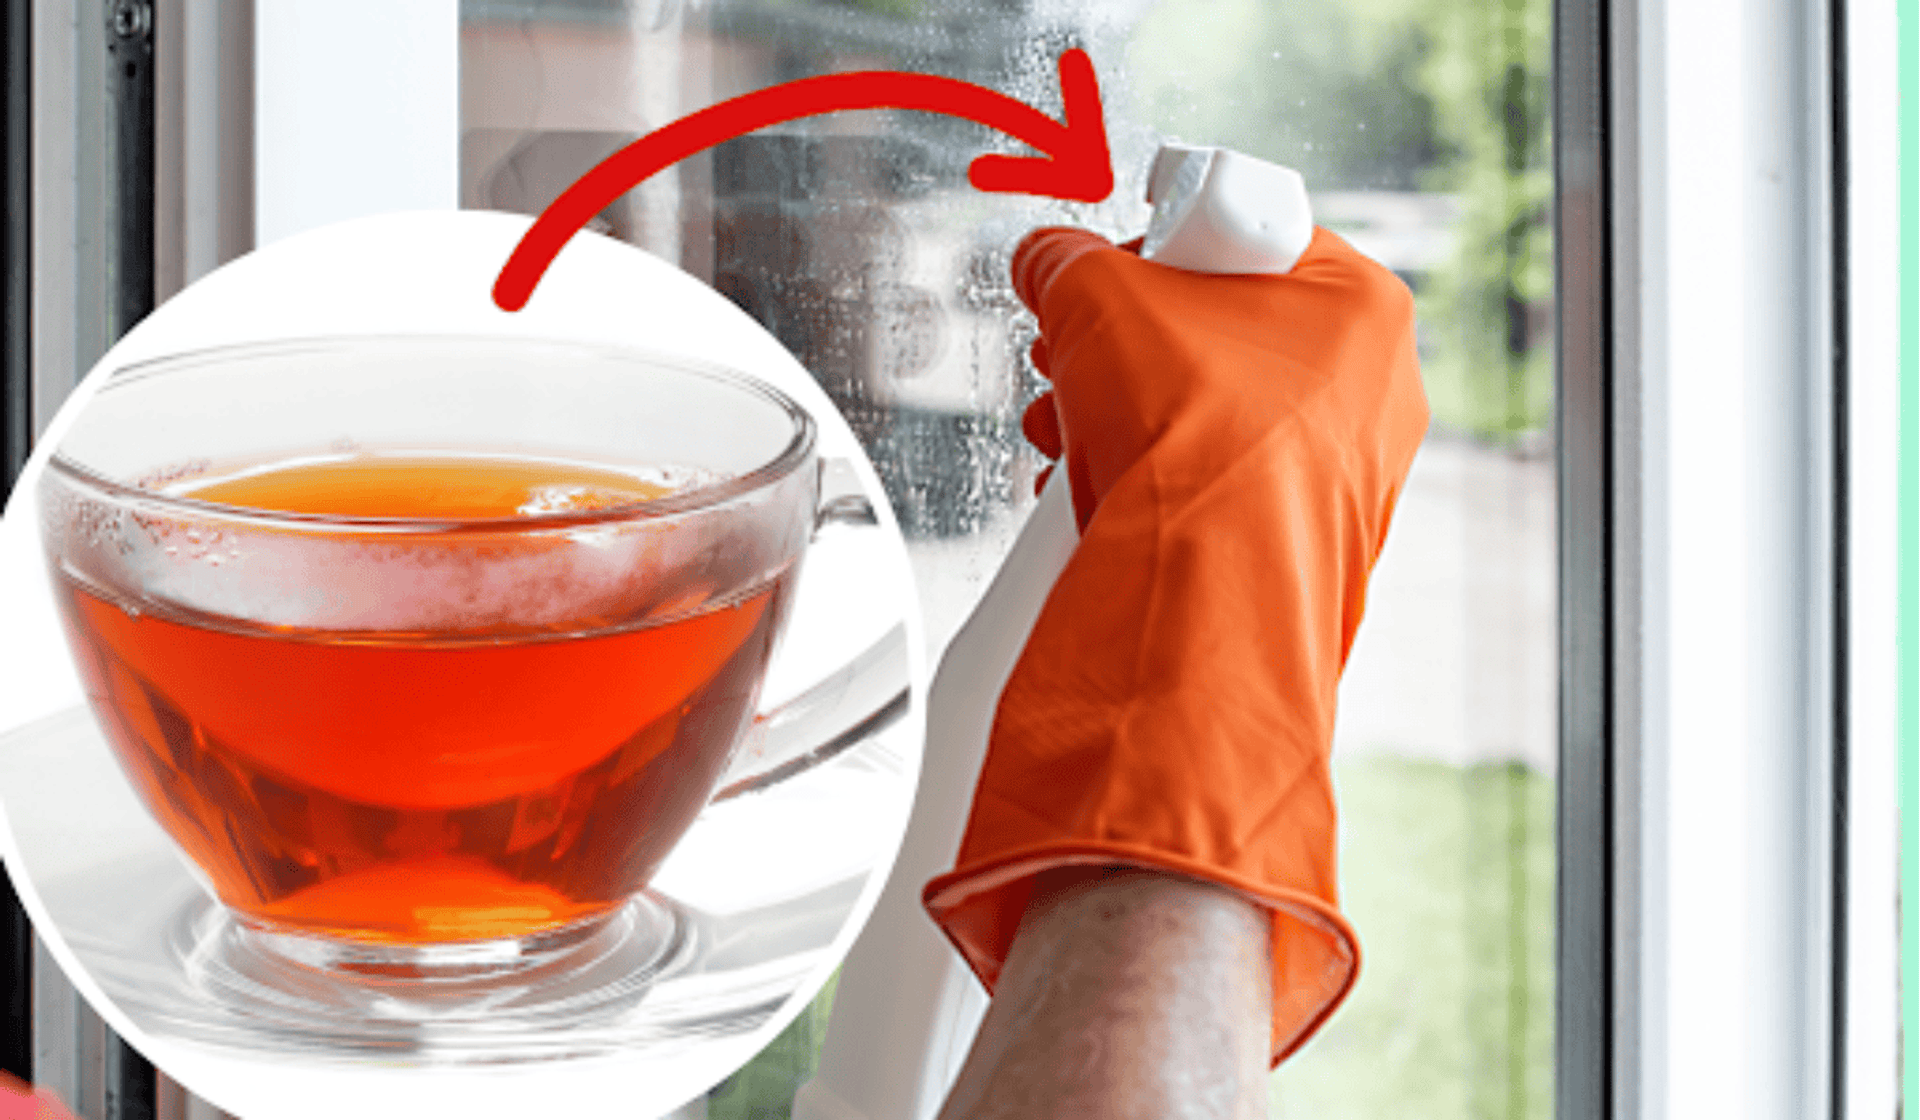 Mycie okien za pomocą herbaty, to tani sposób na czyste okna!